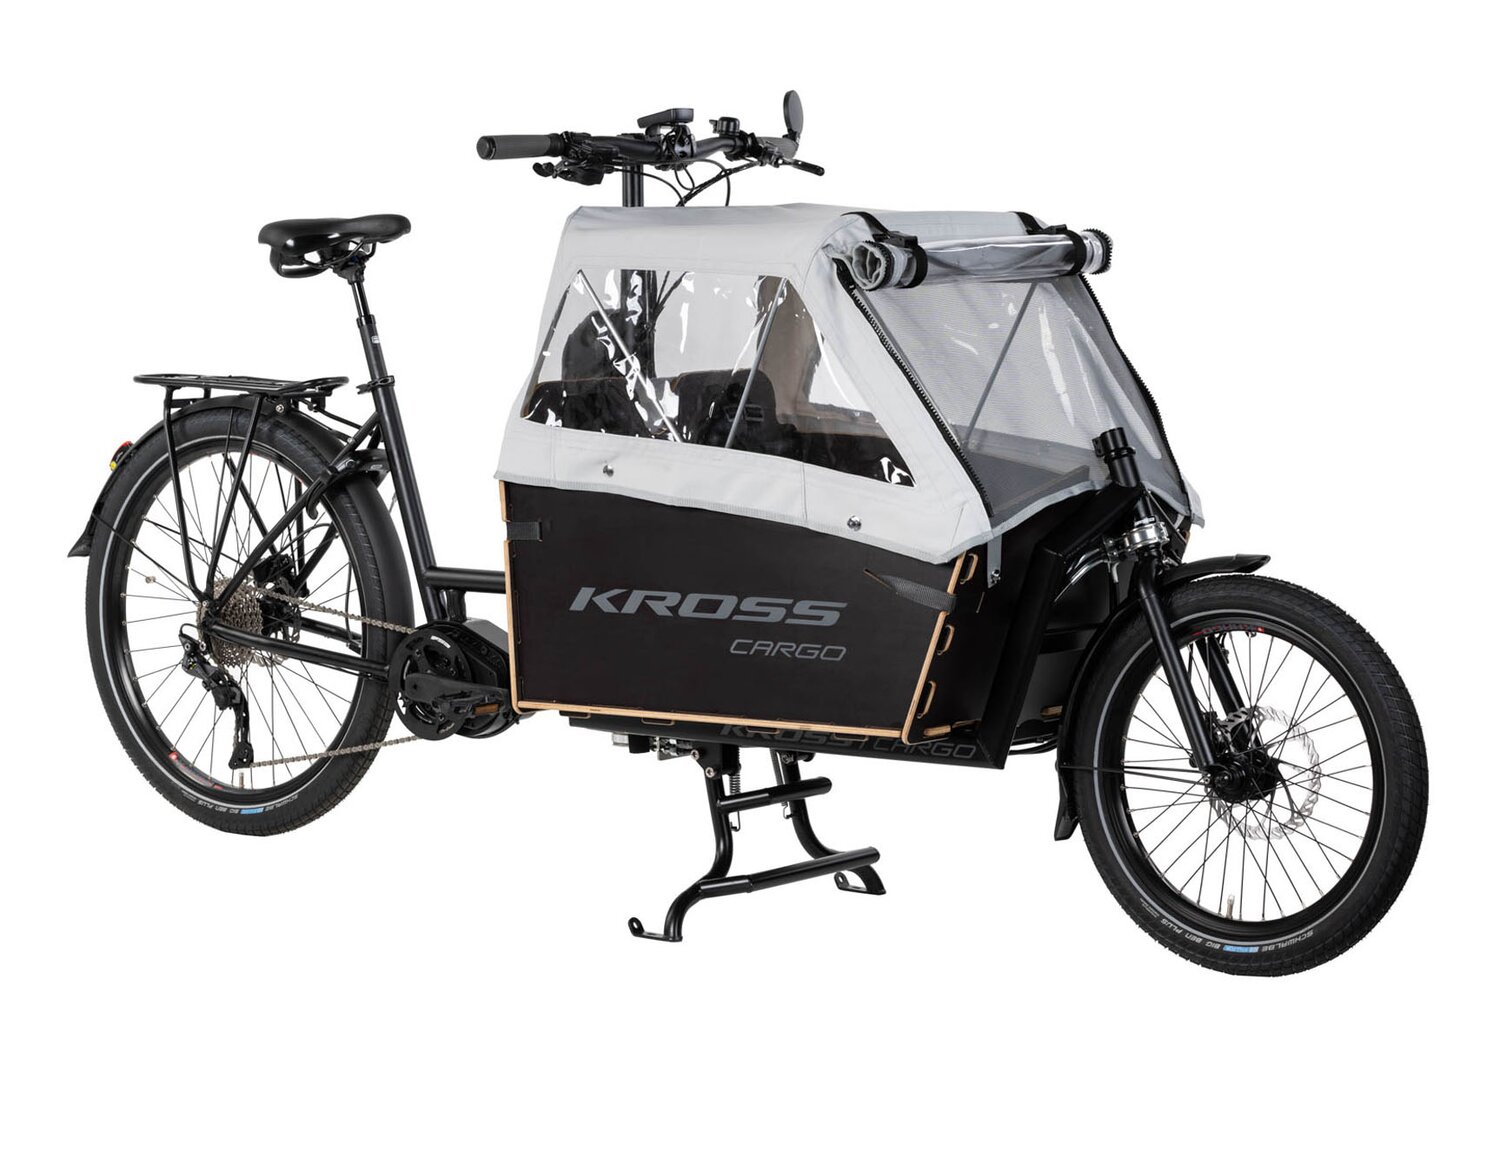  Elektryczny rower cargo Ebike KROSS E-Cargo 1.0 Family na stalowej ramie w kolorze czarnym wyposażony w osprzęt Shimano oraz elektryczny napęd Oli 